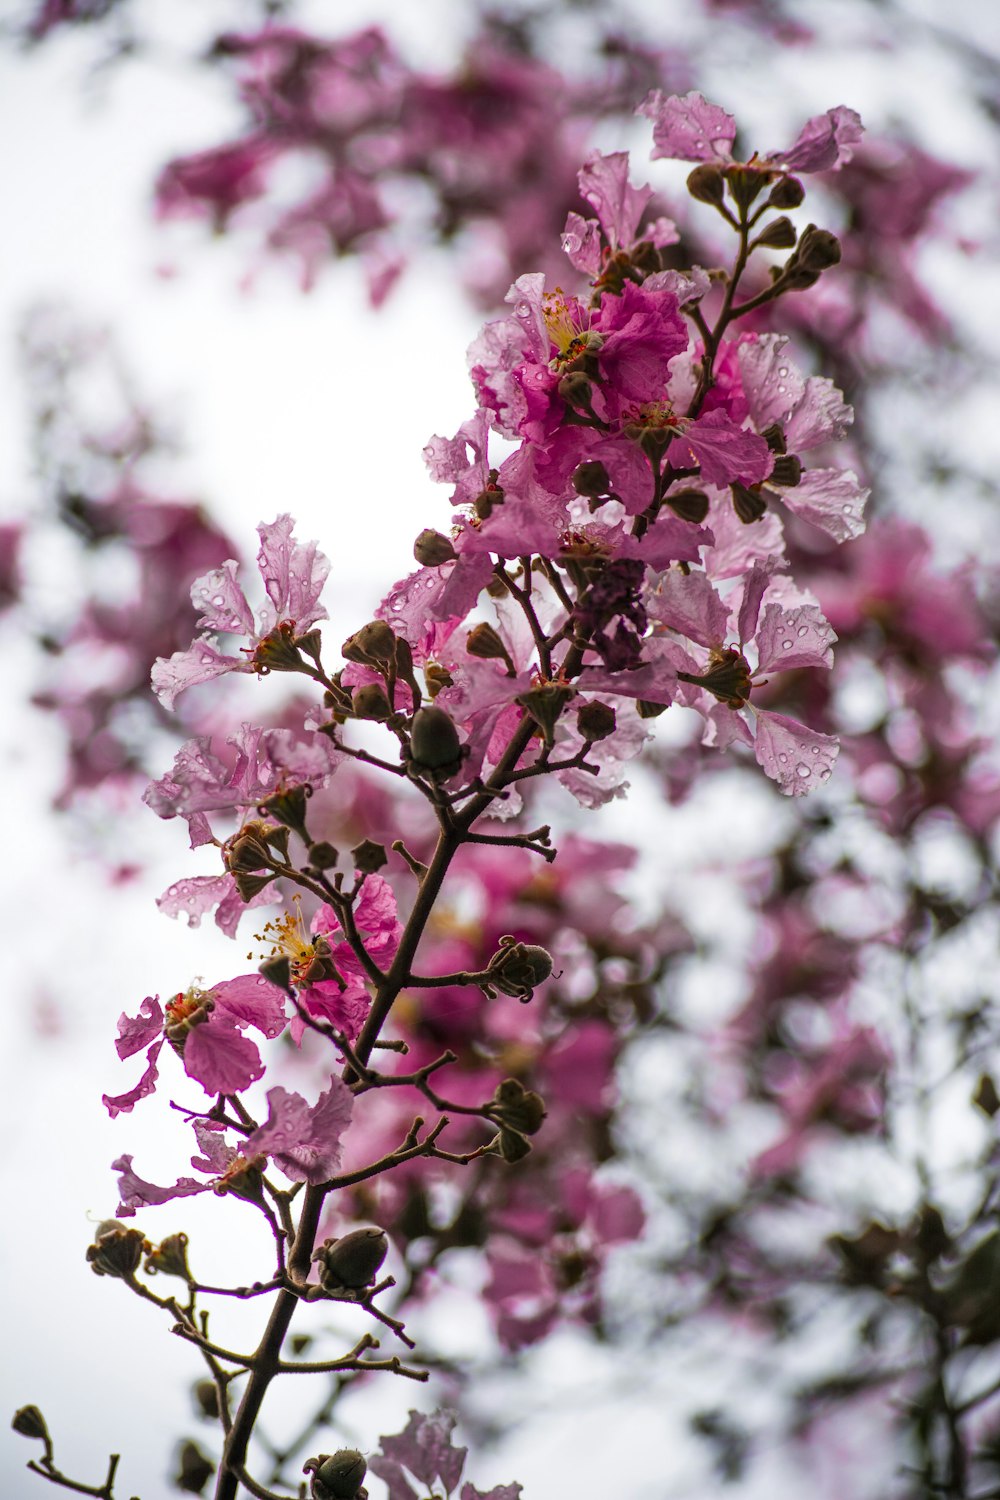 Những bông hoa màu hồng trên cành cây rất đẹp và lãng mạn. Chúng thể hiện sự tươi mới và sự sống đầy hy vọng. Hãy xem hình ảnh này để tận hưởng thêm cảm giác thần tiên và phấn khích.